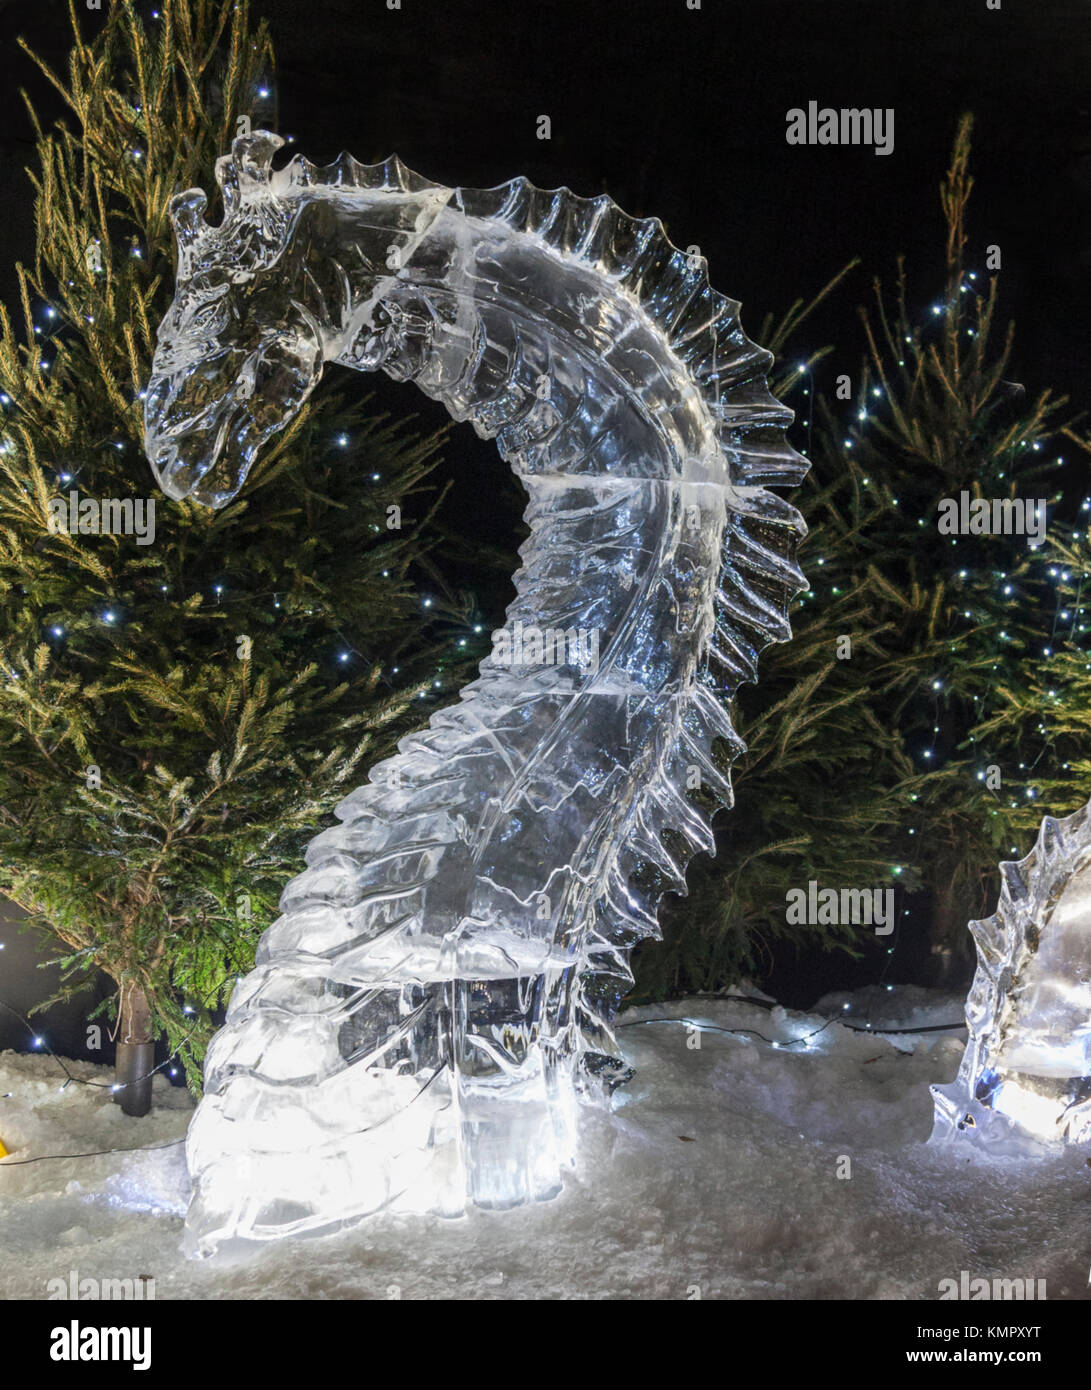 Sculpture de Glace représentant Nessie, le monstre du Loch Ness, dans le cadre de l'Ice Adventure, au cours de la Noël, George St. Ecosse, Royaume-Uni Banque D'Images